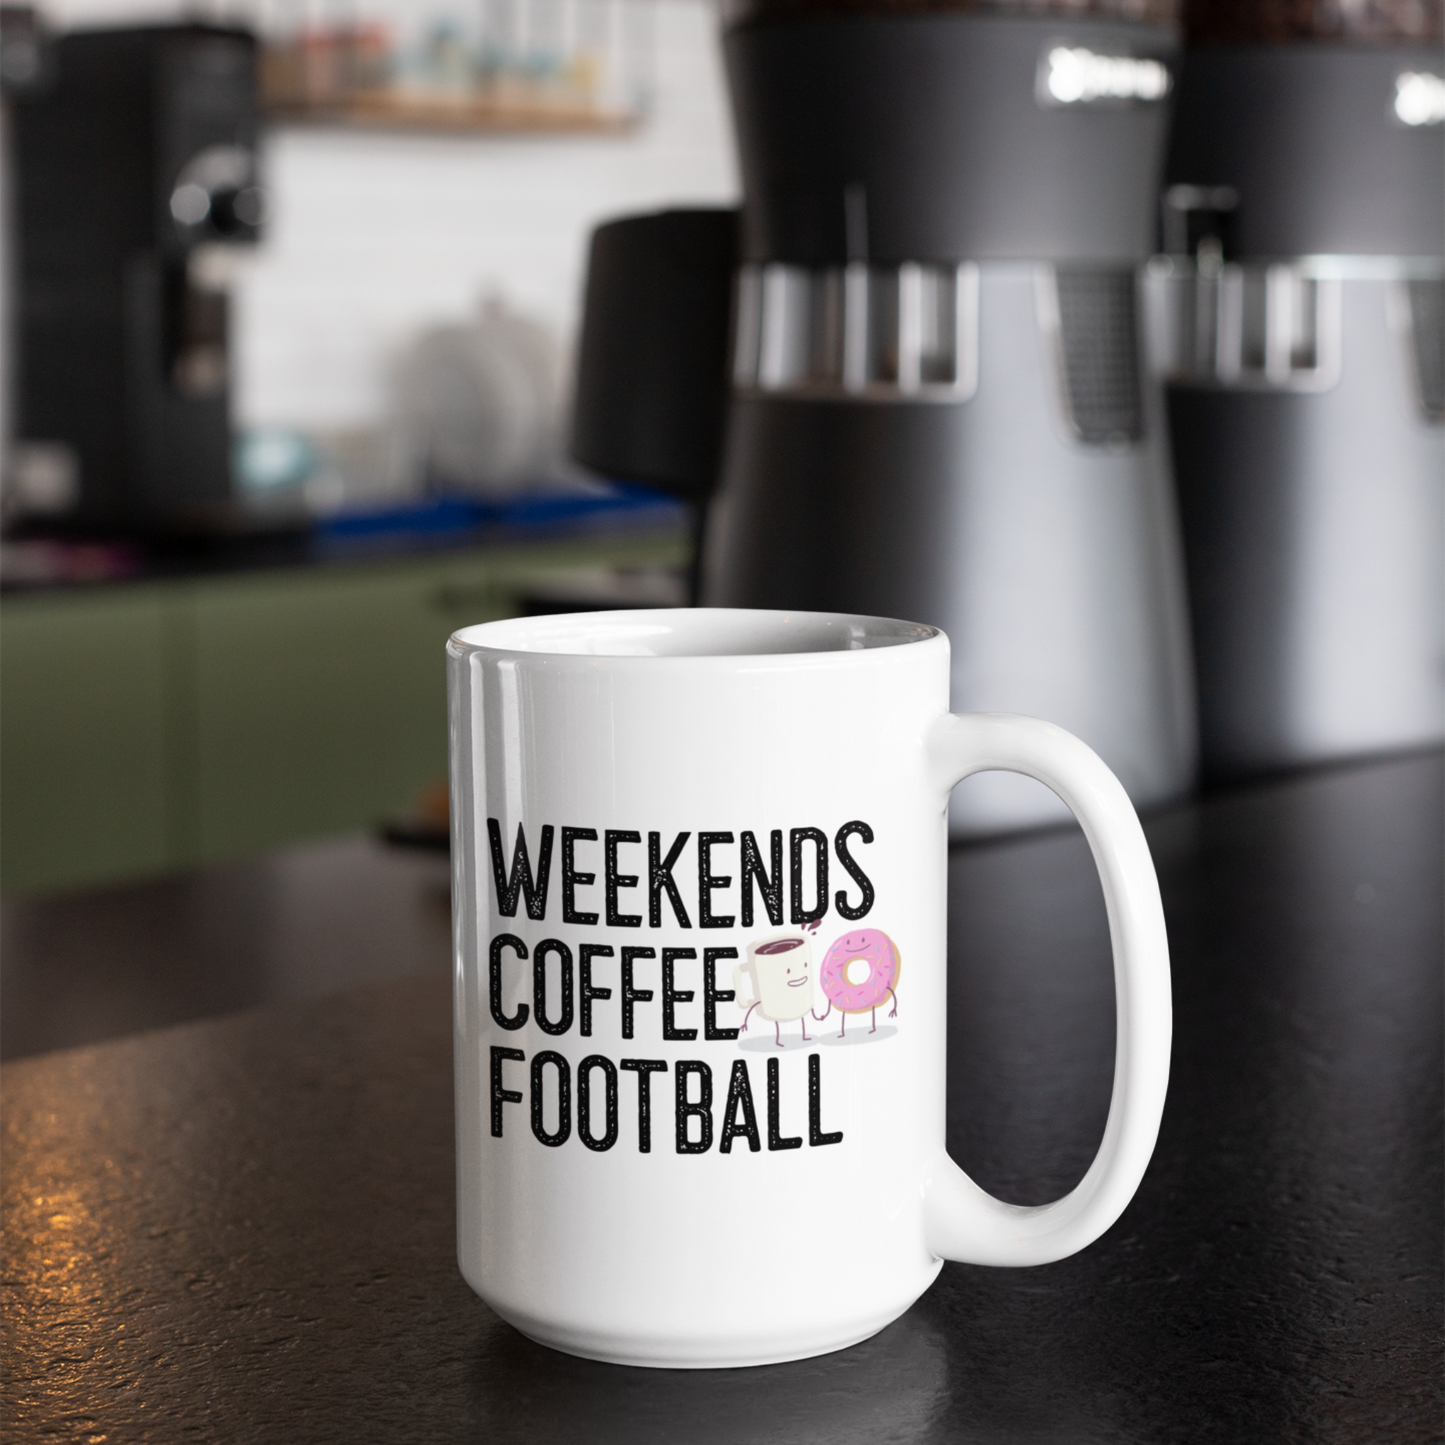 Weekends Coffee Football Mug 15 oz